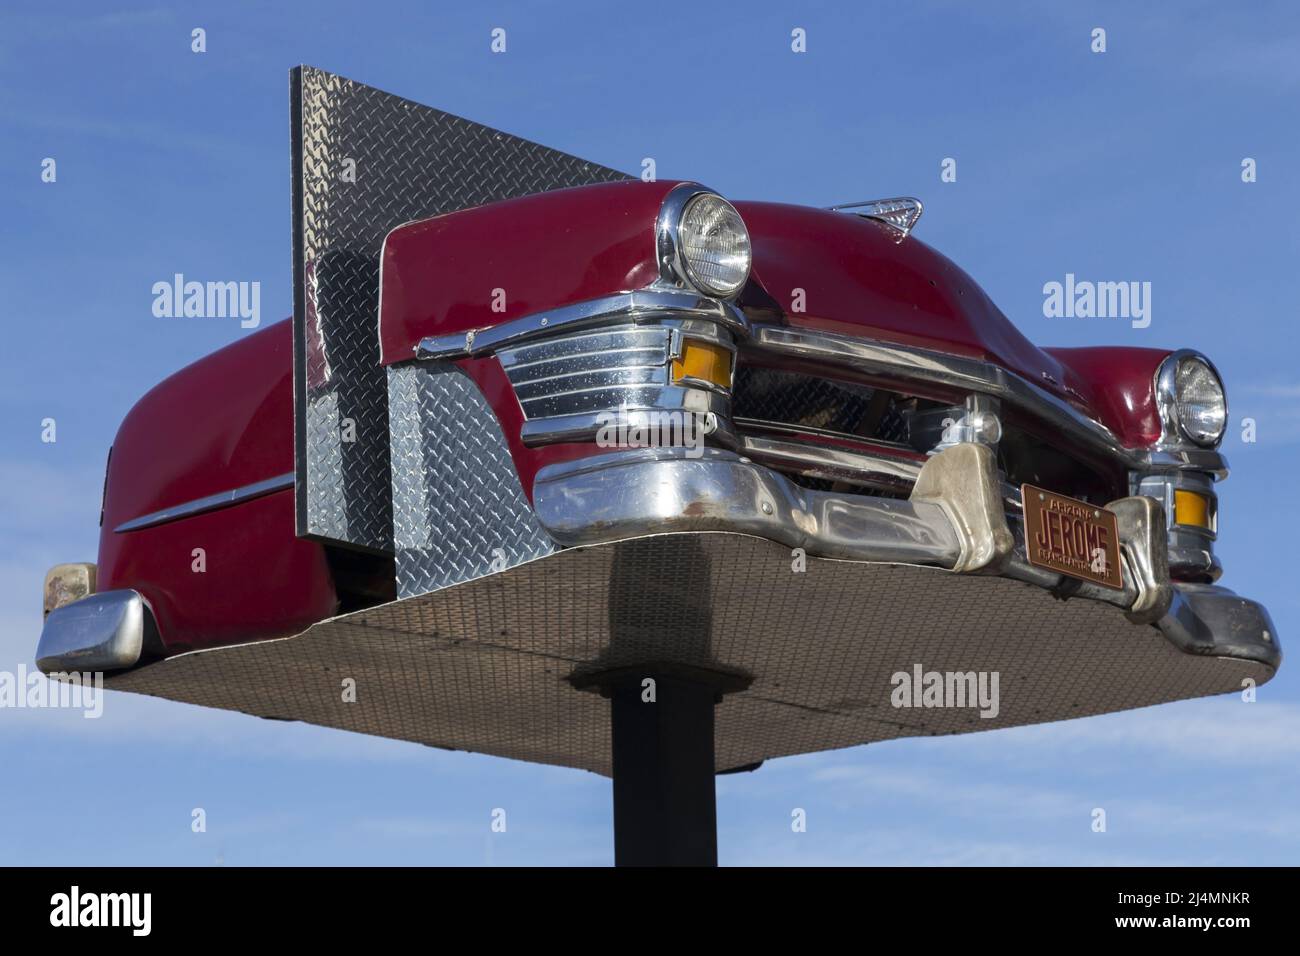 Vorderansicht des klassischen roten Vintage Chevrolet Modellautos oder Chevy American Vehicle aus dem Jahr 1950s auf einer erhöhten Plattform in der Stadt Jerome, Arizona Stockfoto